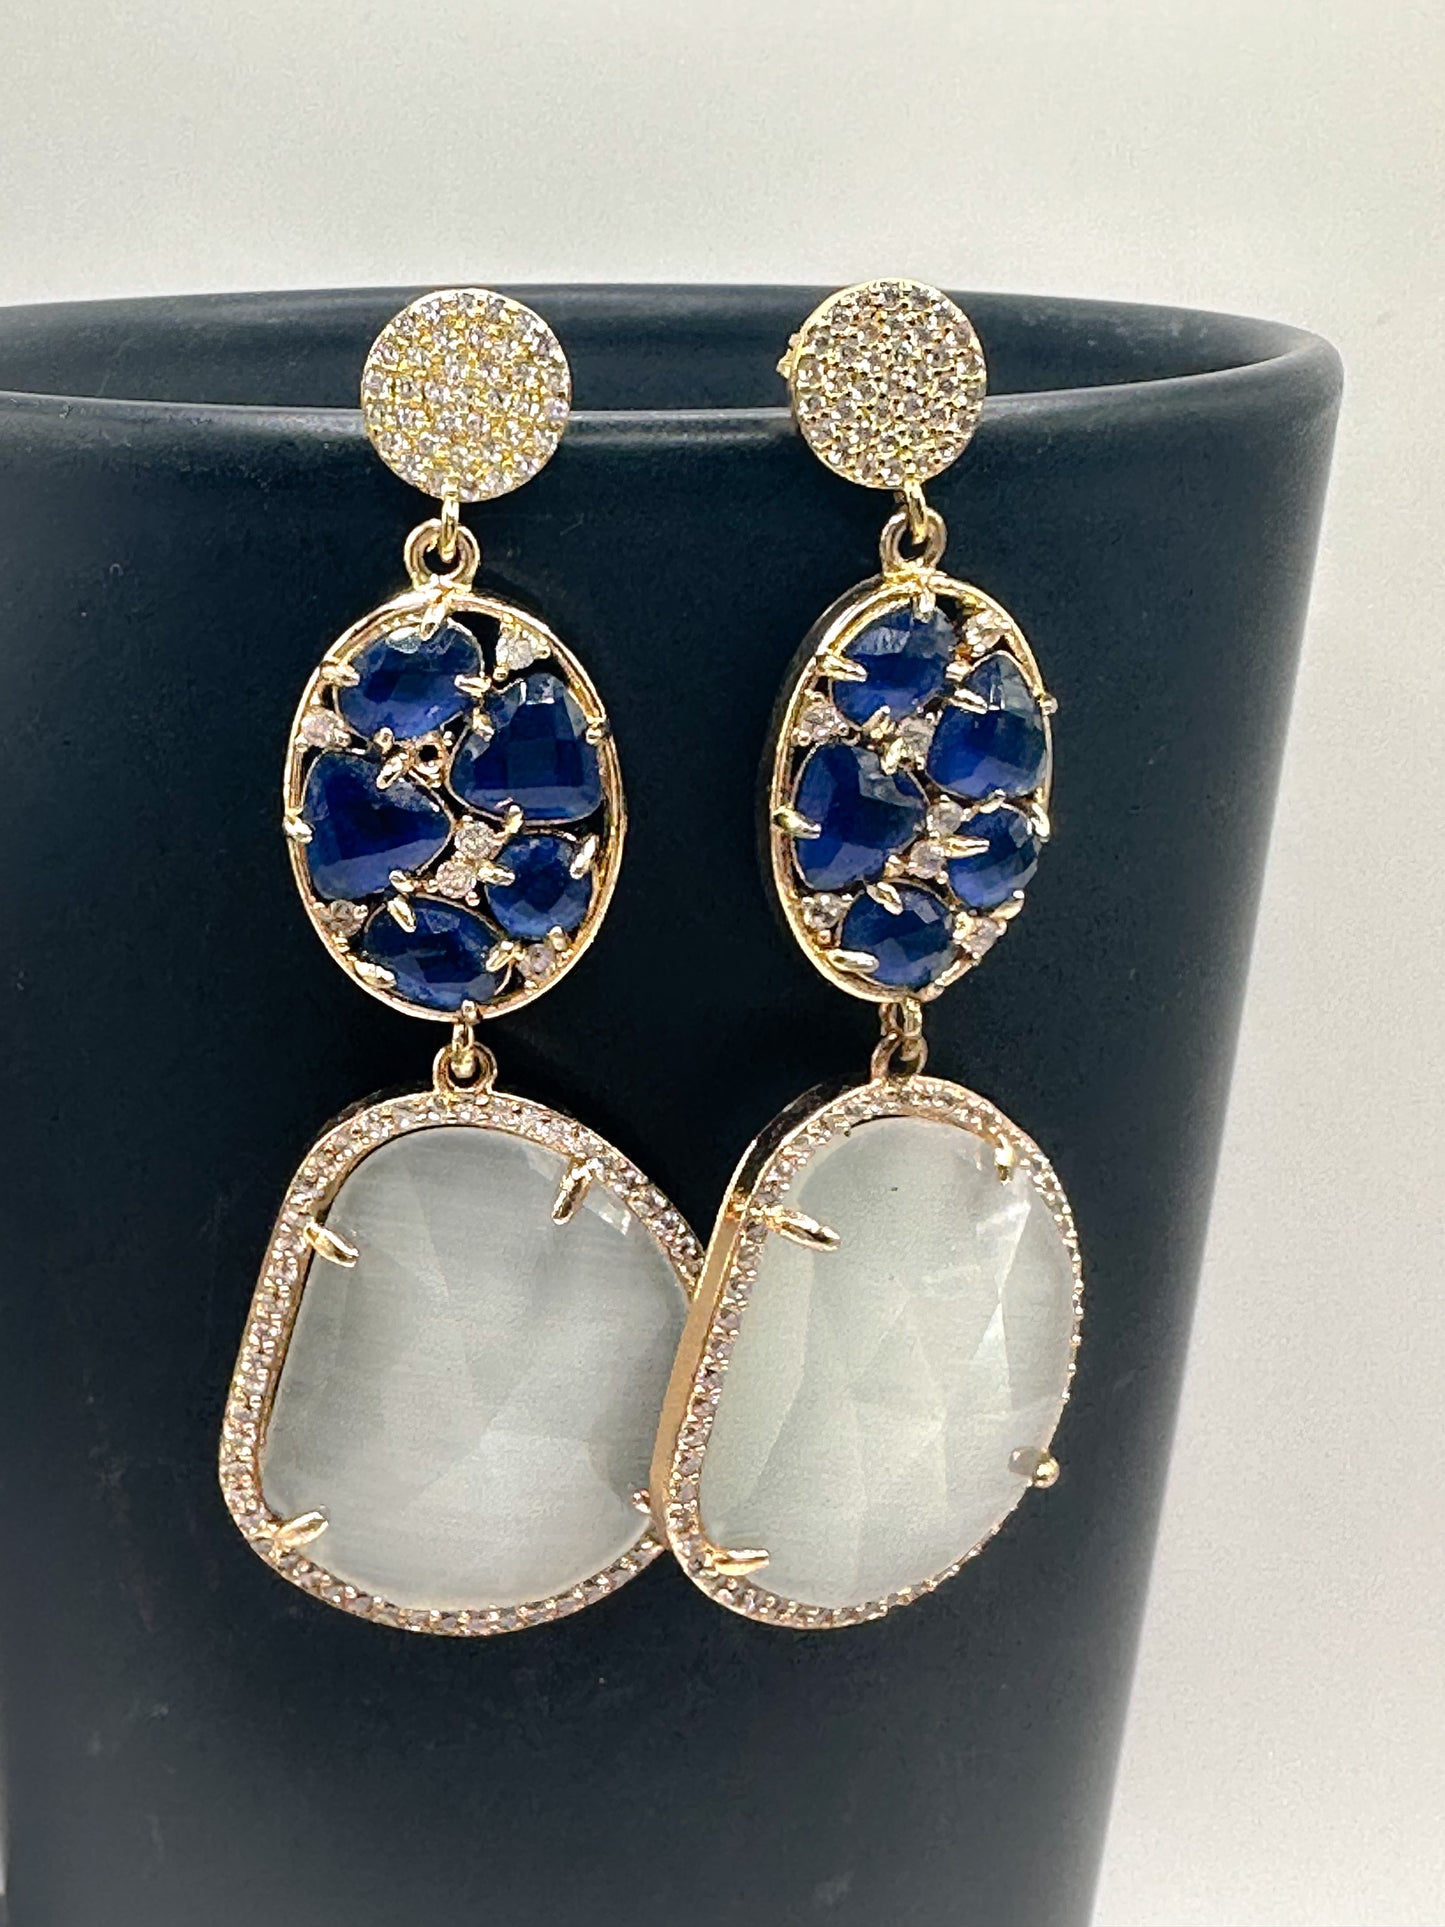 Blue/moonlight stone earrings